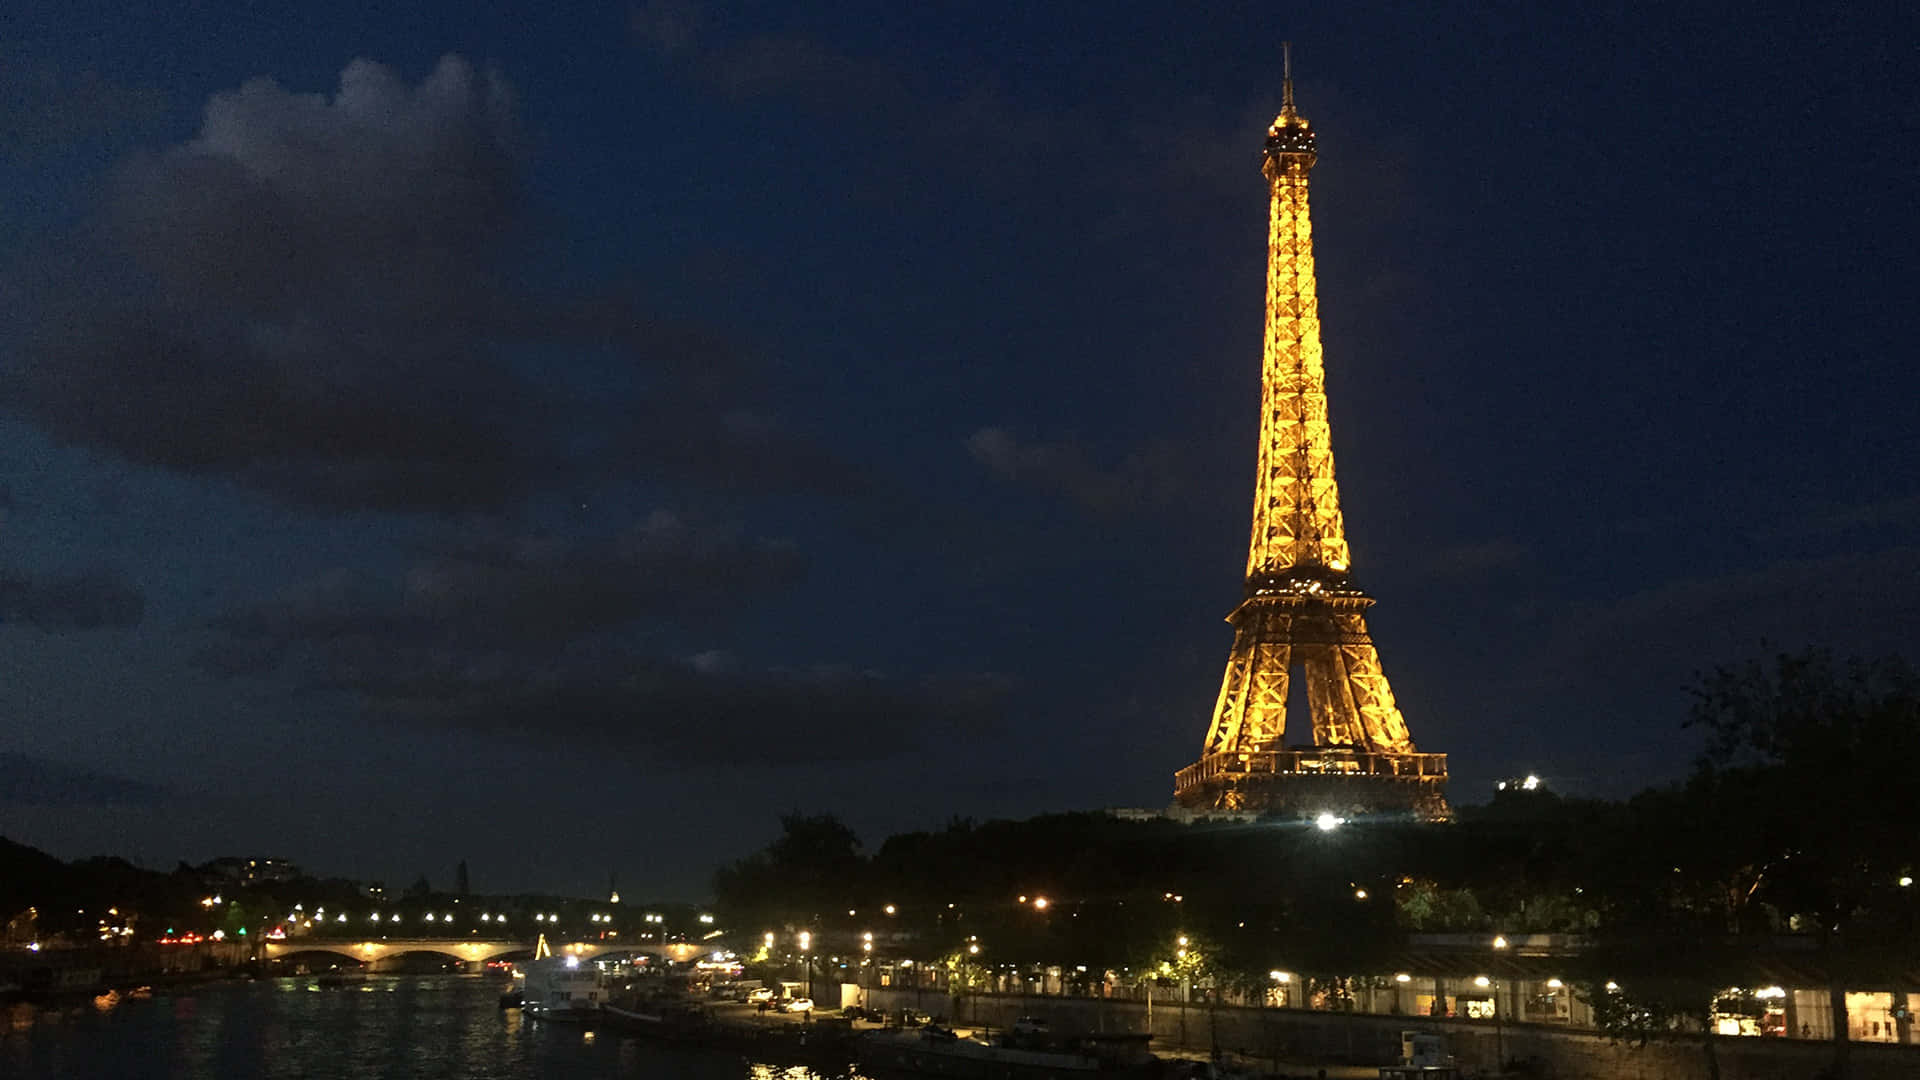 Unailustración Colorida De La Torre Eiffel En El Centro De La Ciudad De París.